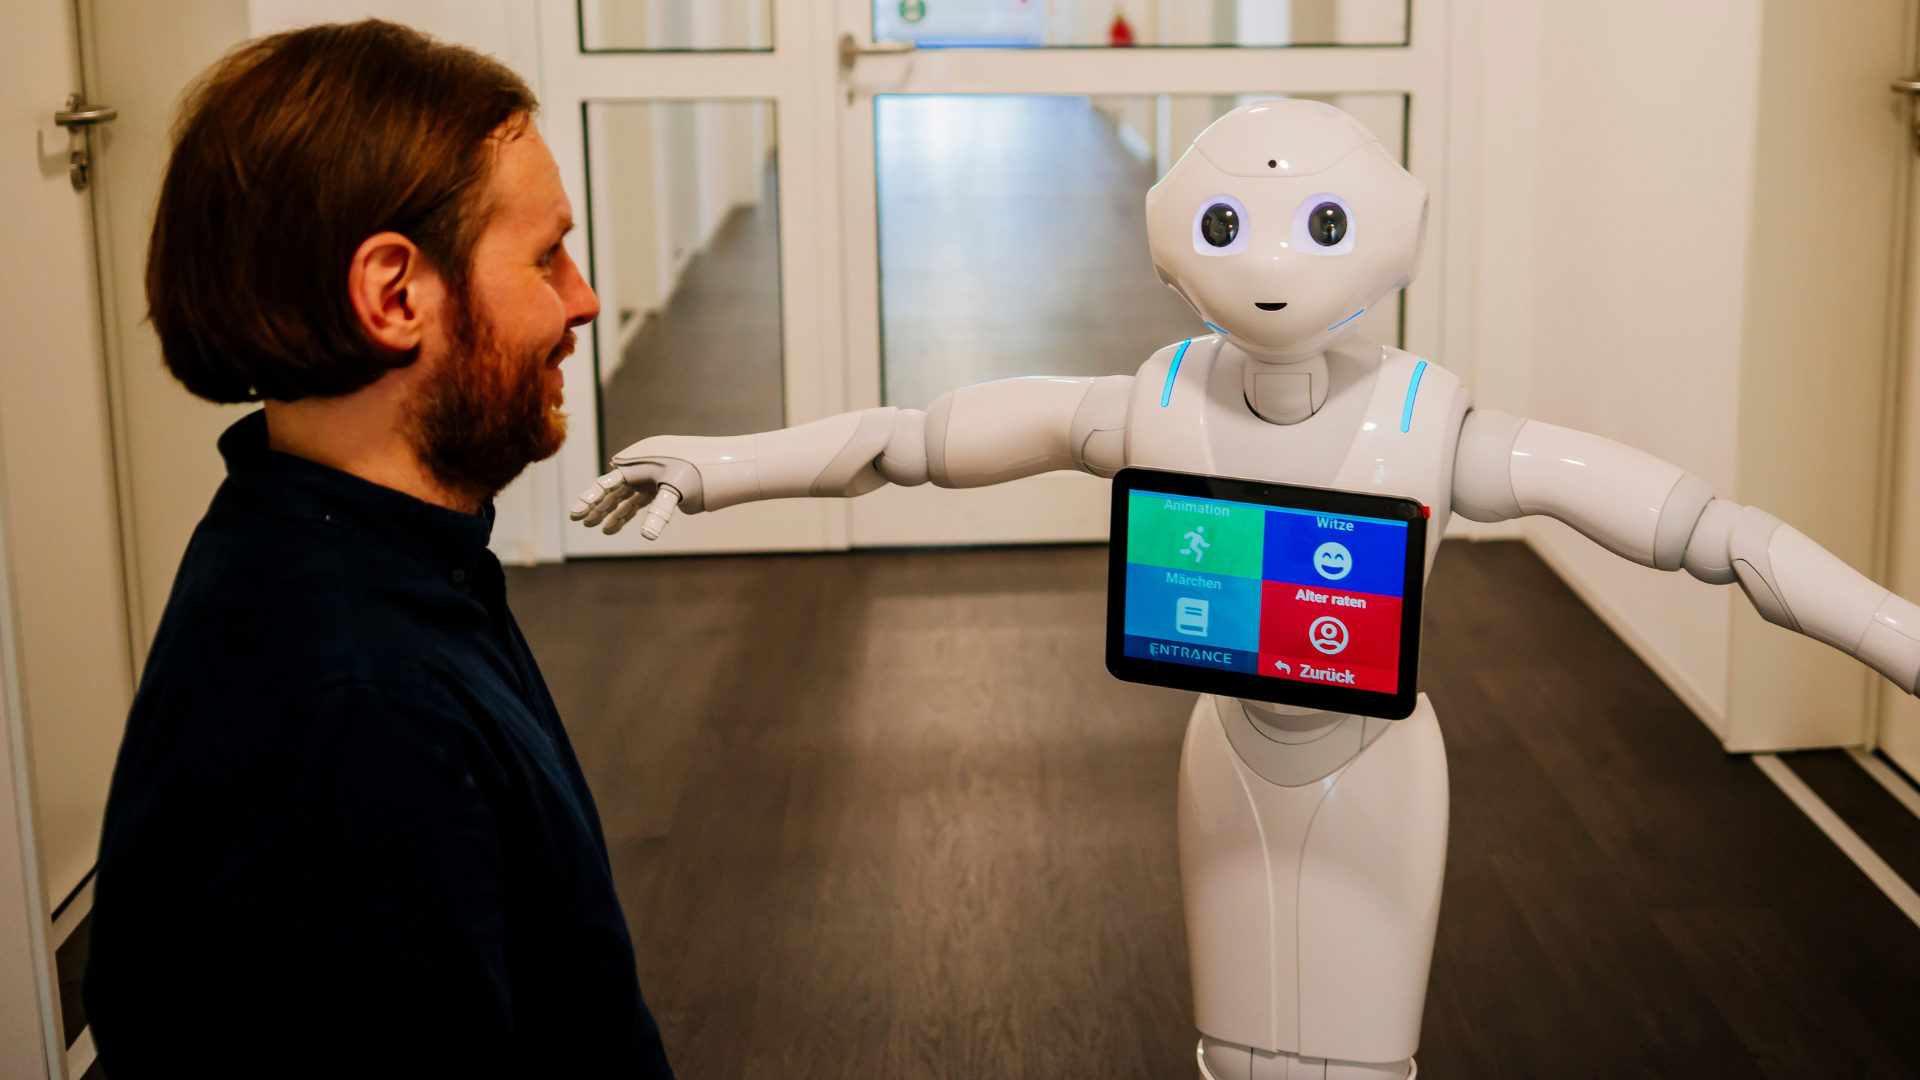 Robert Ranisch lächelt den humanoiden Roboter Pepper mit ausgestrecktem Arm in einem Flur an, auf dessen Bildschirm verschiedene interaktive Optionen angezeigt werden.